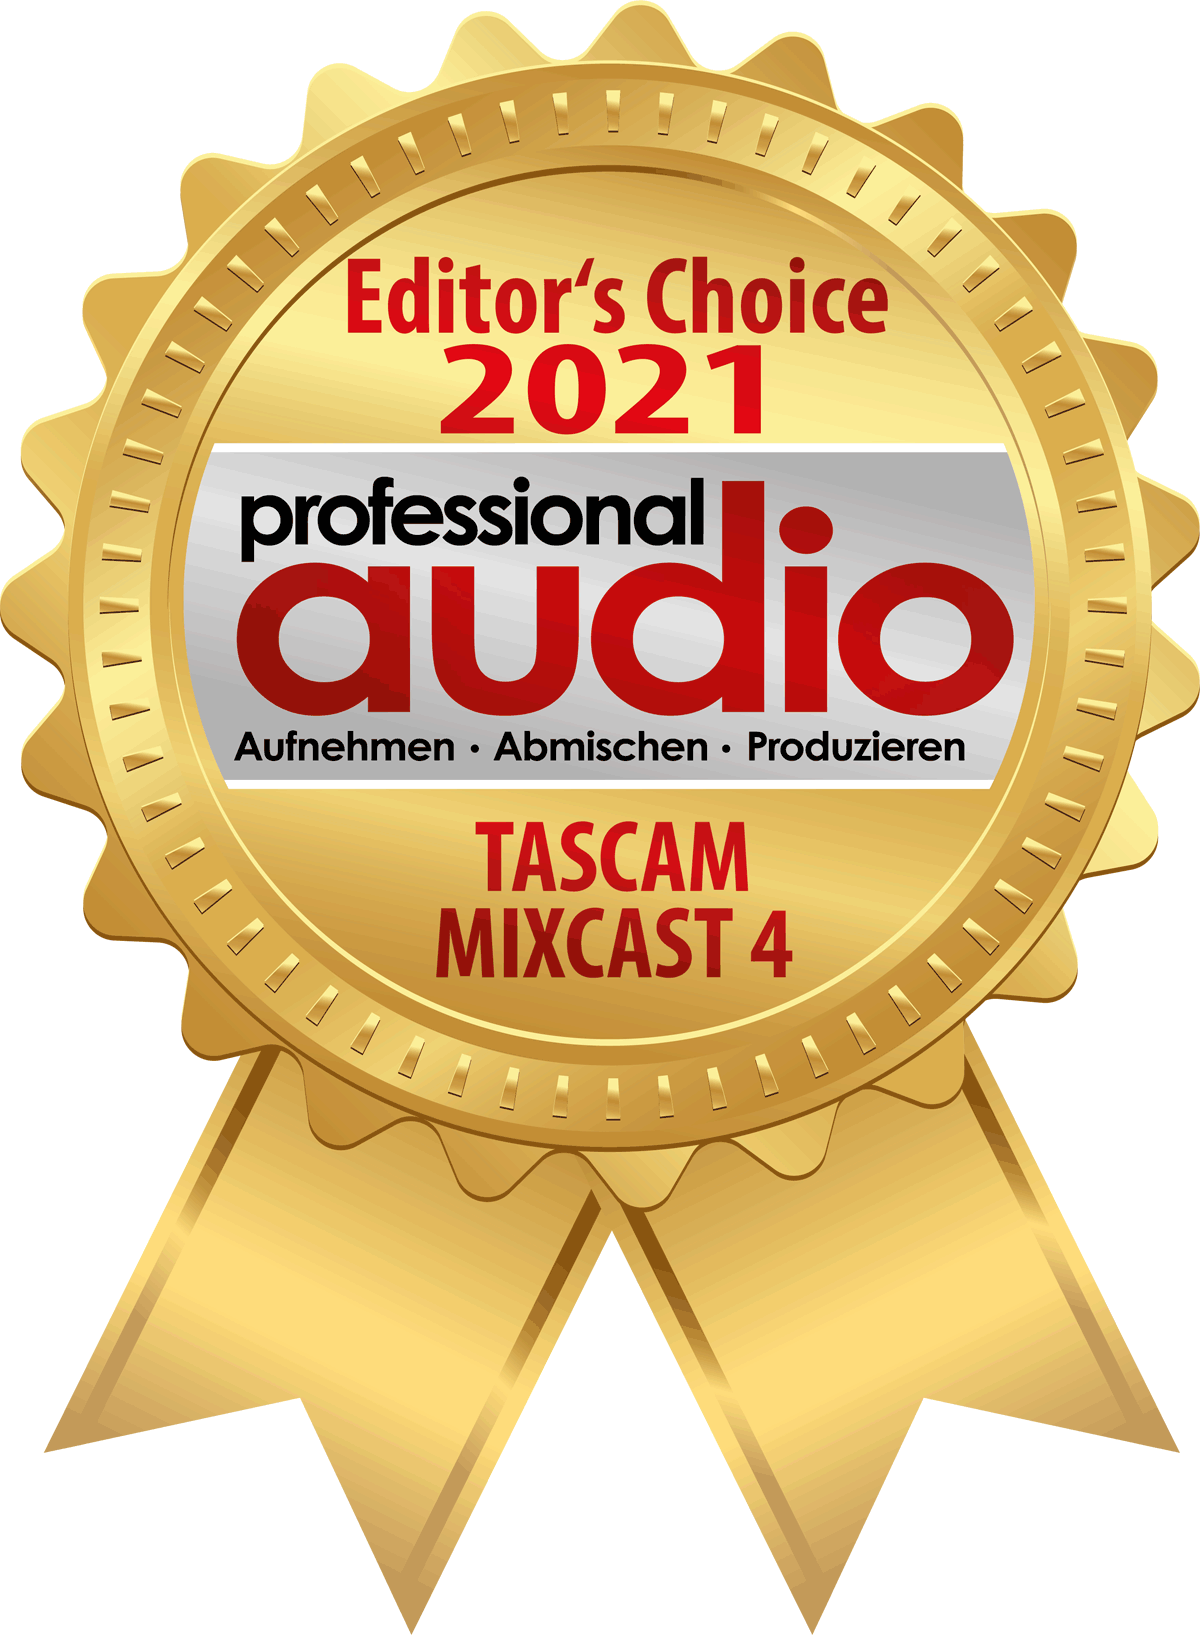 Professional Audio zeichnet das Podcast-Studio Tascam Mixcast 4 als 'Editor’s Choice 2021' aus